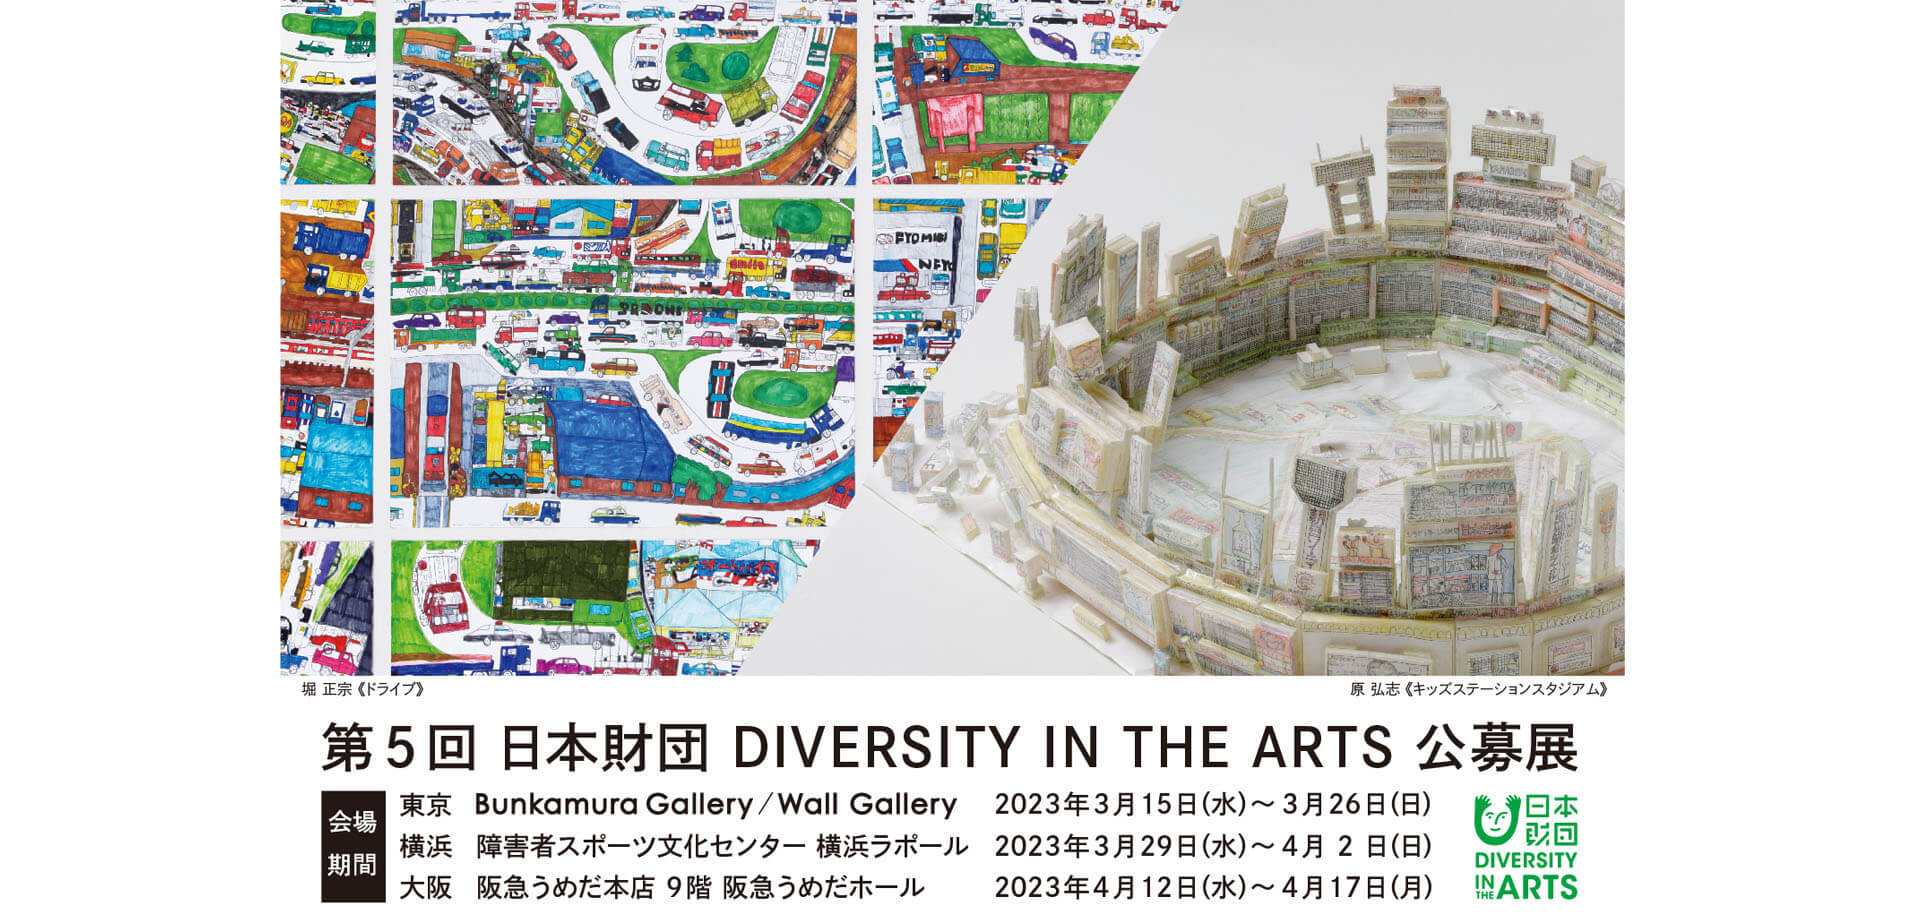 第5回 日本財団 DIVERSITY IN THE ARTS 公募展